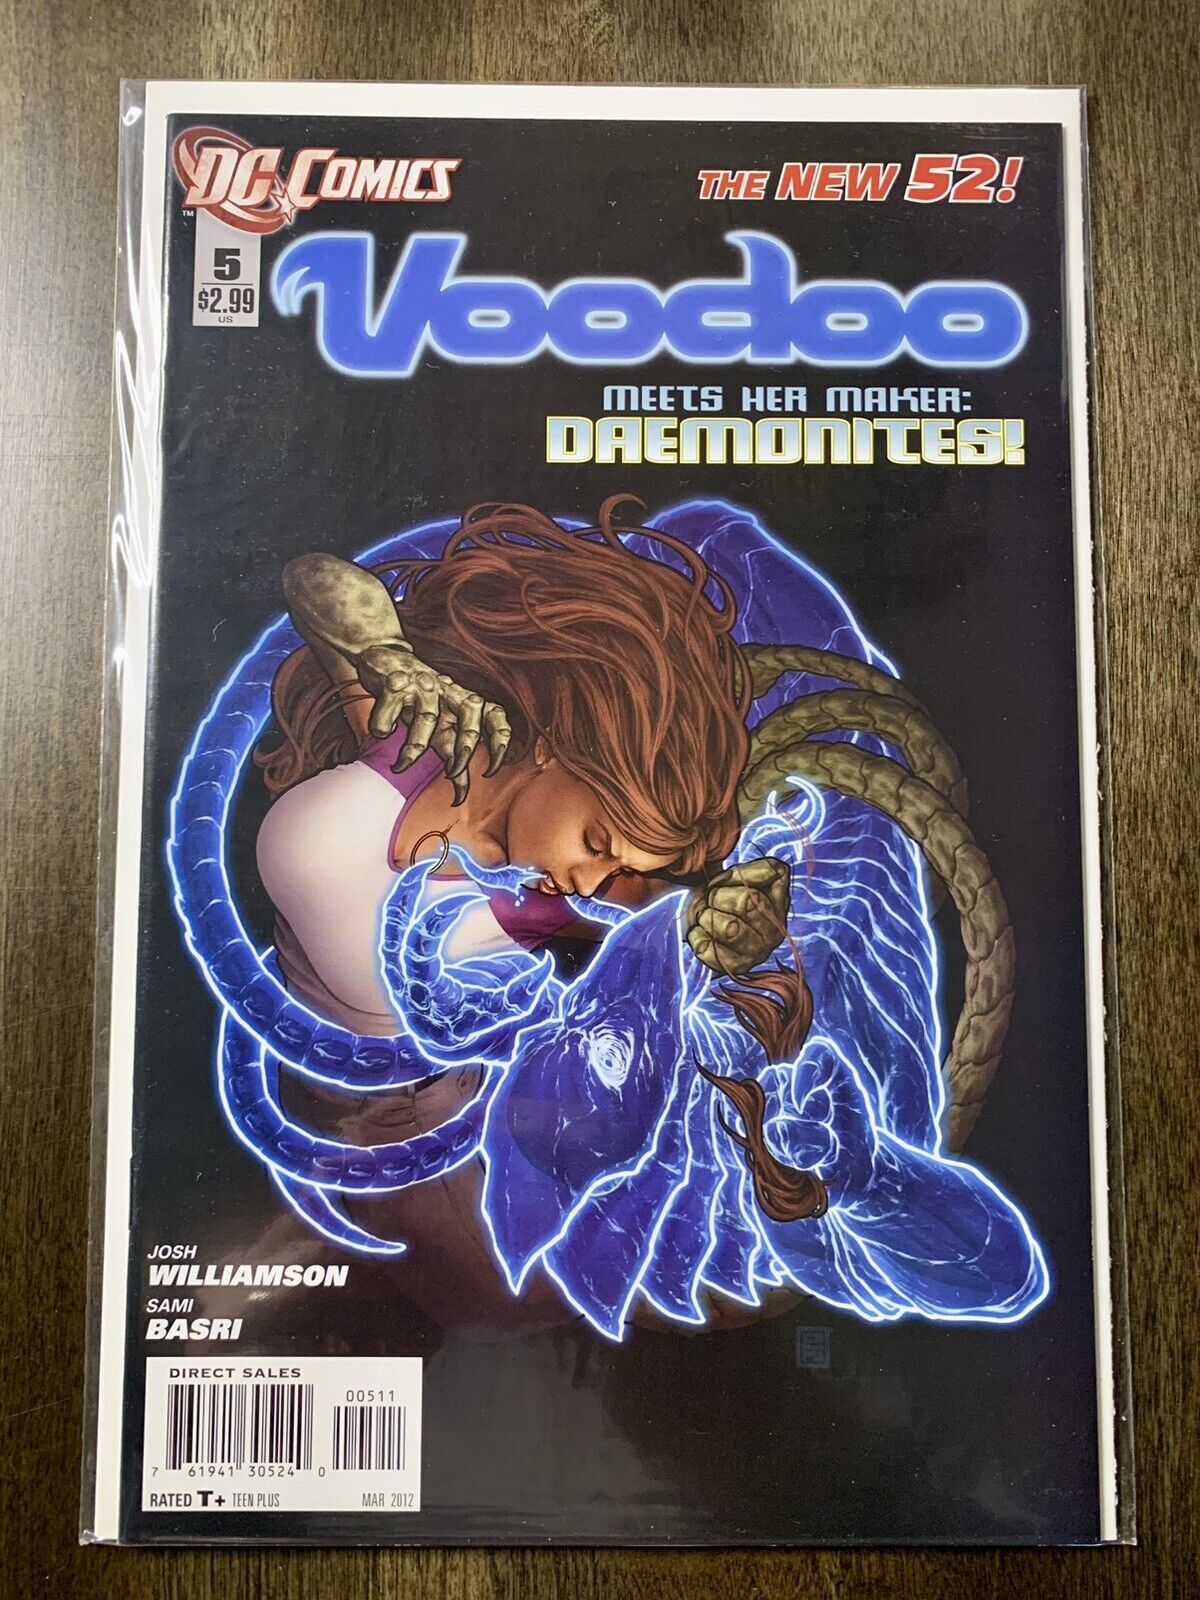 Voodoo #5 (DC Comics, March 2012) Comic Book